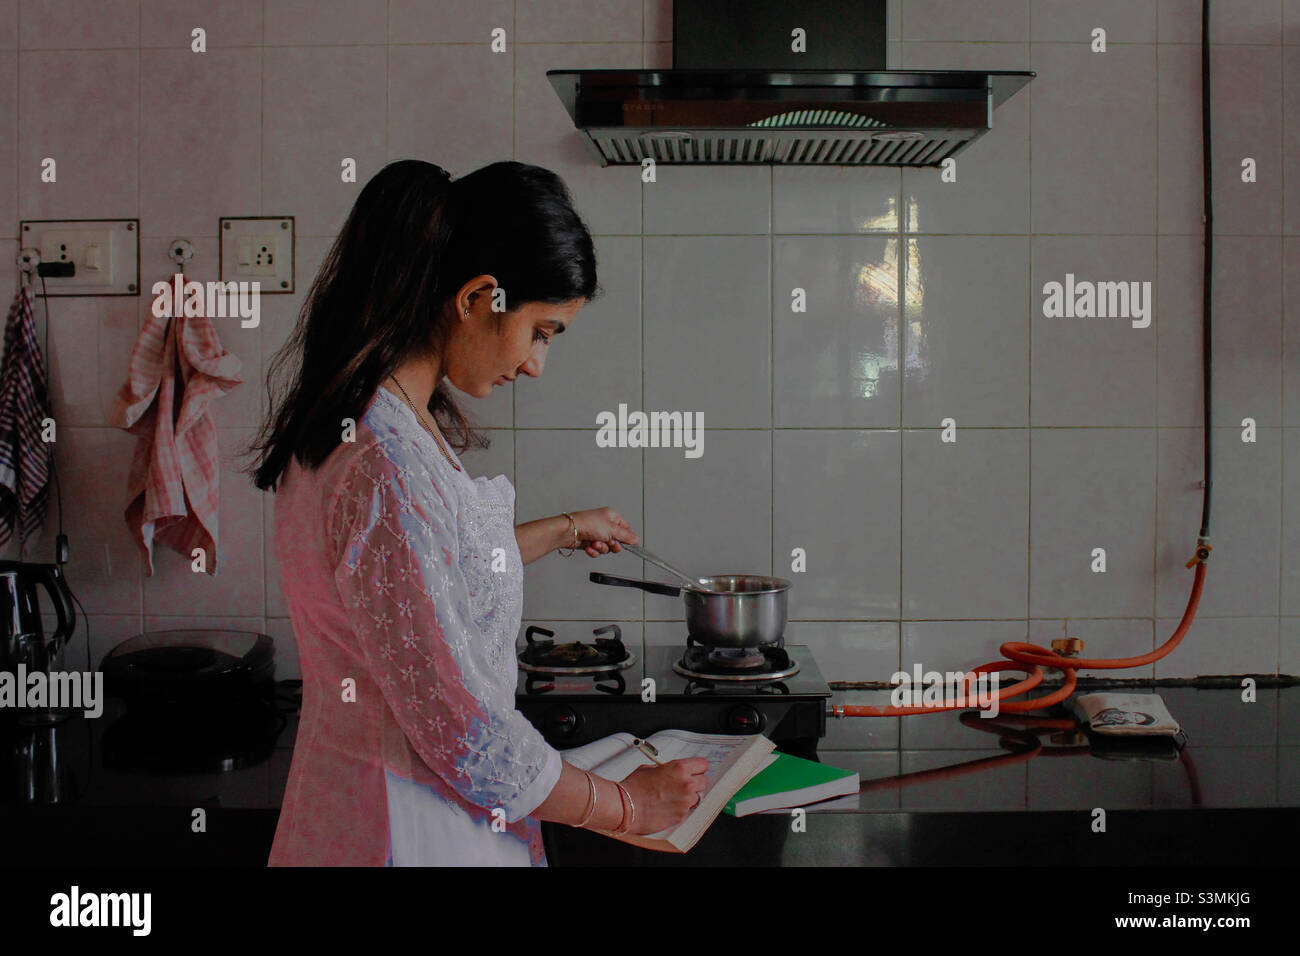 Dieses Bild zeigt eine südasiatische Frau, die studiert, während sie Hausarbeit unternimmt. Eine gelebte Erfahrung vieler ist, gleichzeitig studieren zu müssen, während sie mit Haushaltsverantwortung fortfährt Stockfoto